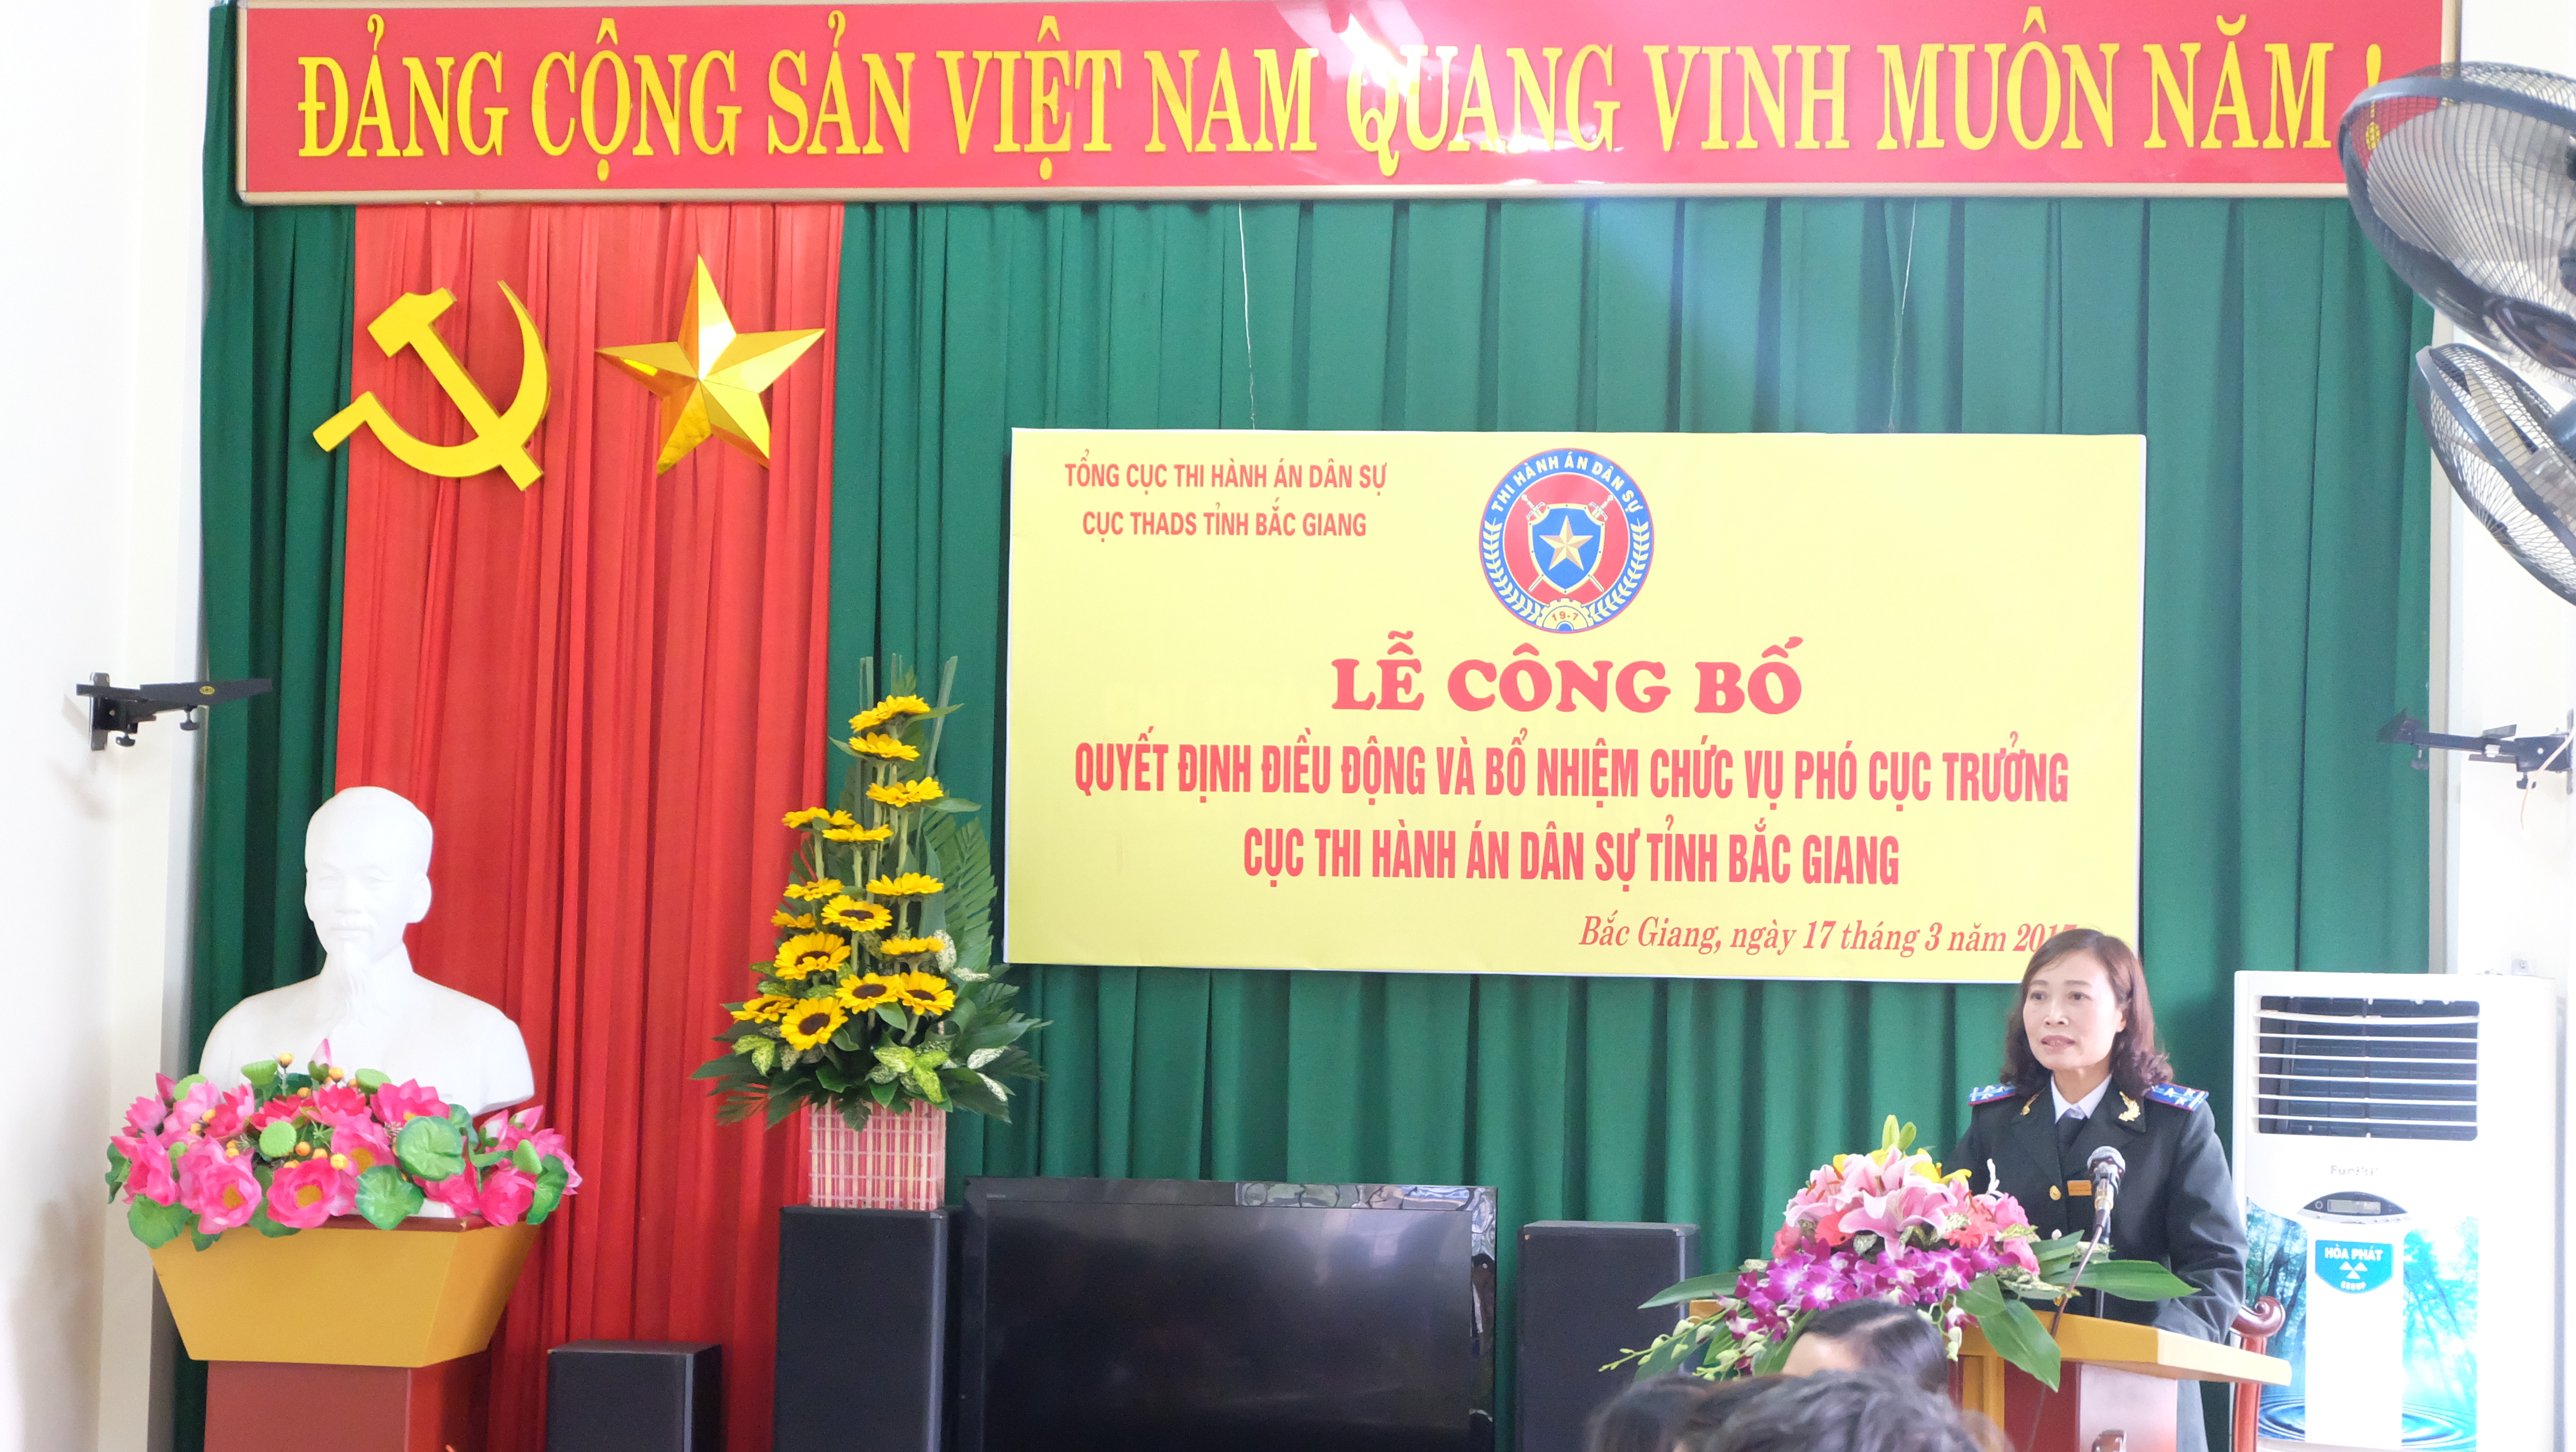 Lễ công bố và trao quyết định bổ nhiệm Phó Cục trưởng Cục Thi hành án dân sự tỉnh Bắc Giang